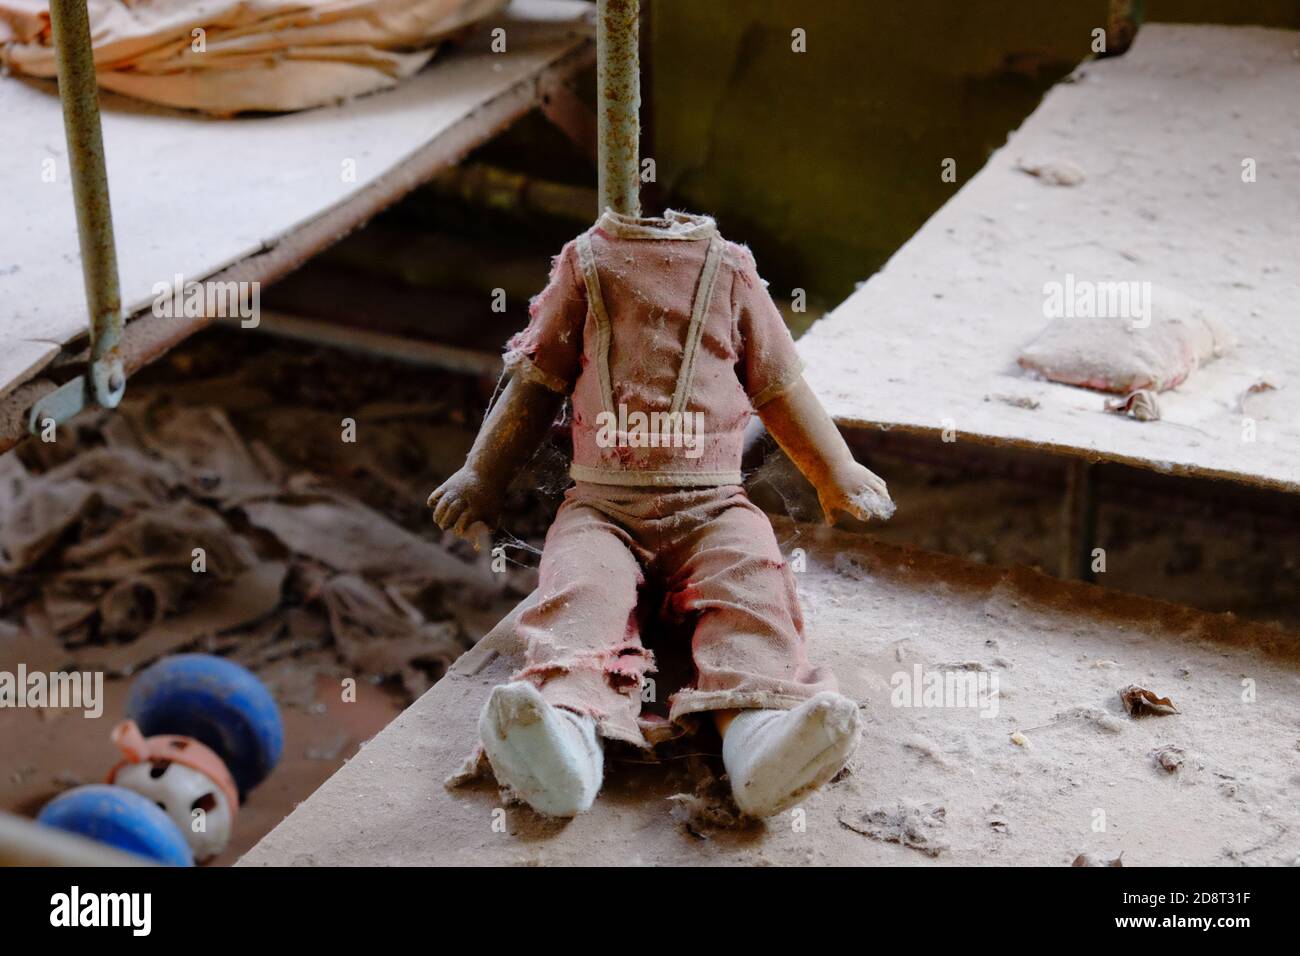 Kinderpuppe ohne Kopf. Ein schmutziges, zerbrochenes Kinderspielzeug aus einem strahlenverseuchten Kindergarten in Tschernobyl. Stockfoto